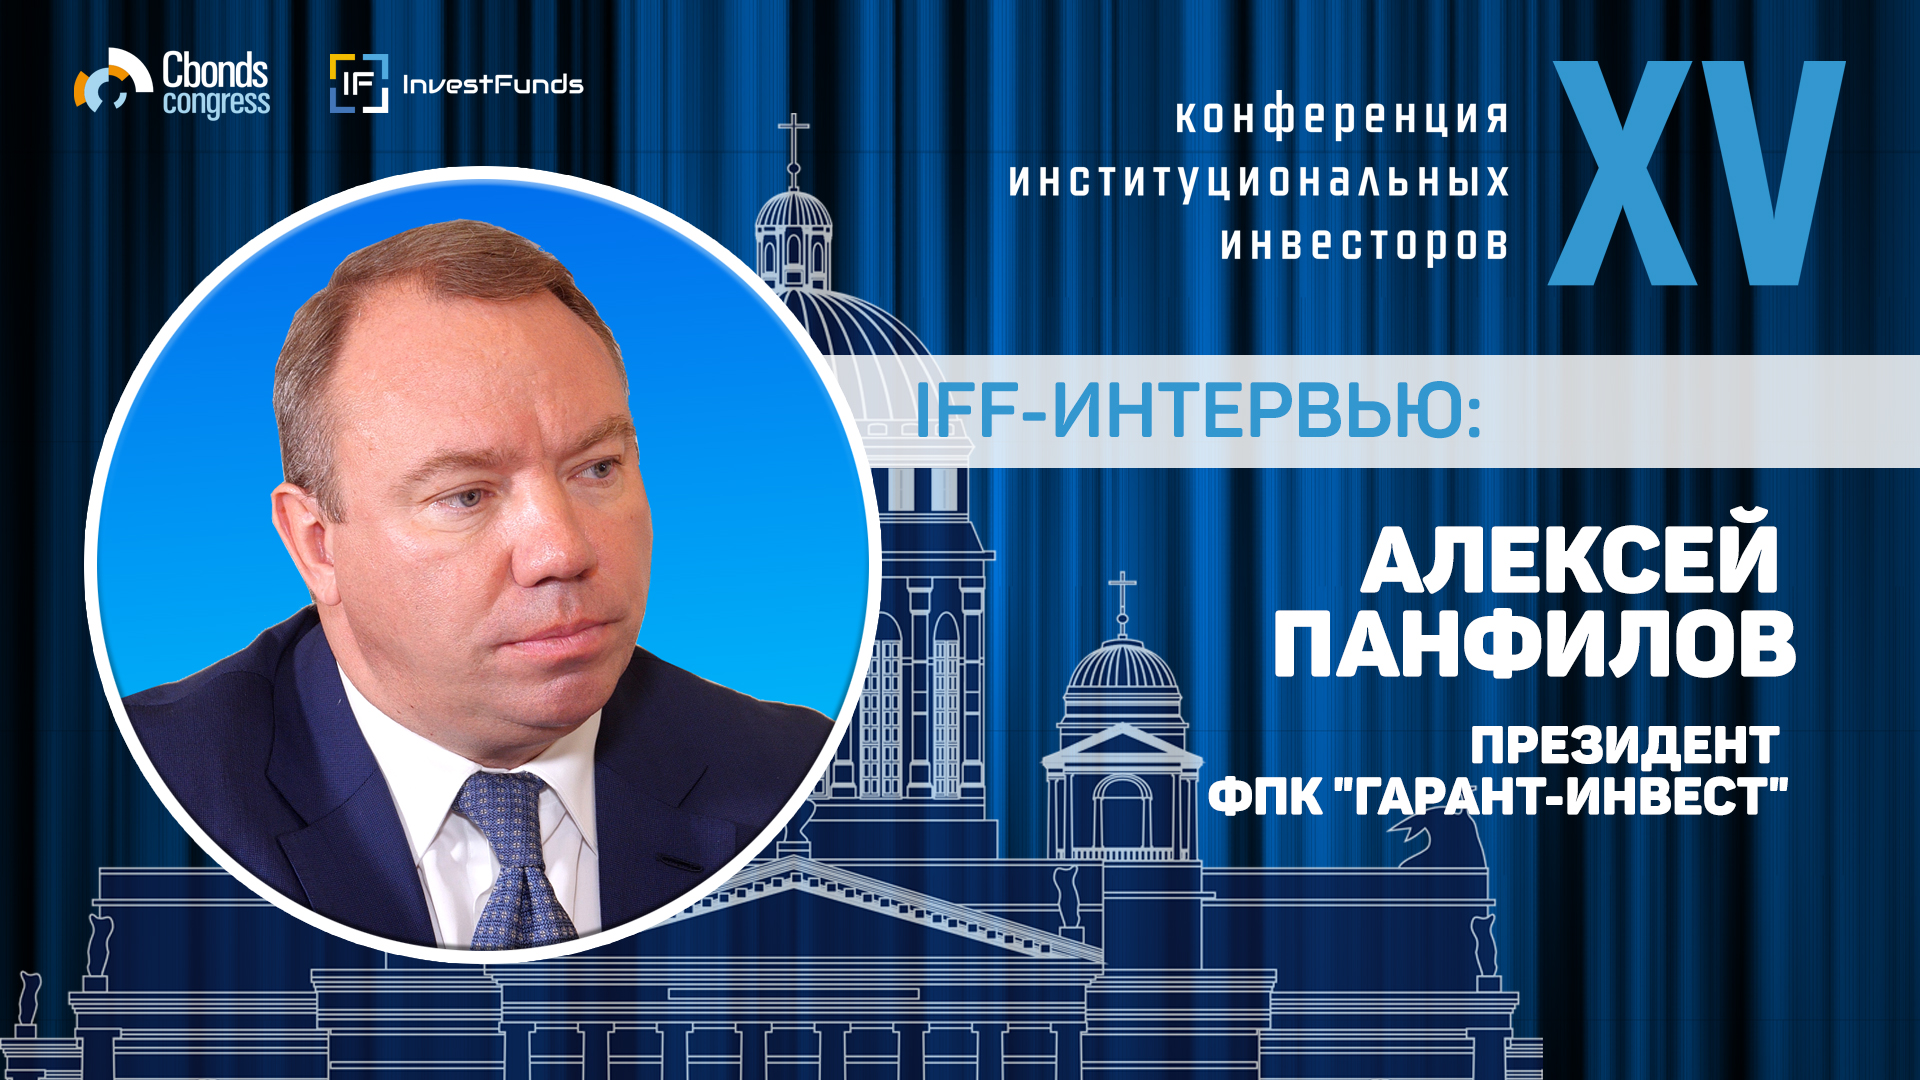 Интервью IFF: Алексей Панфилов, президент ФПК "Гарант-Инвест"